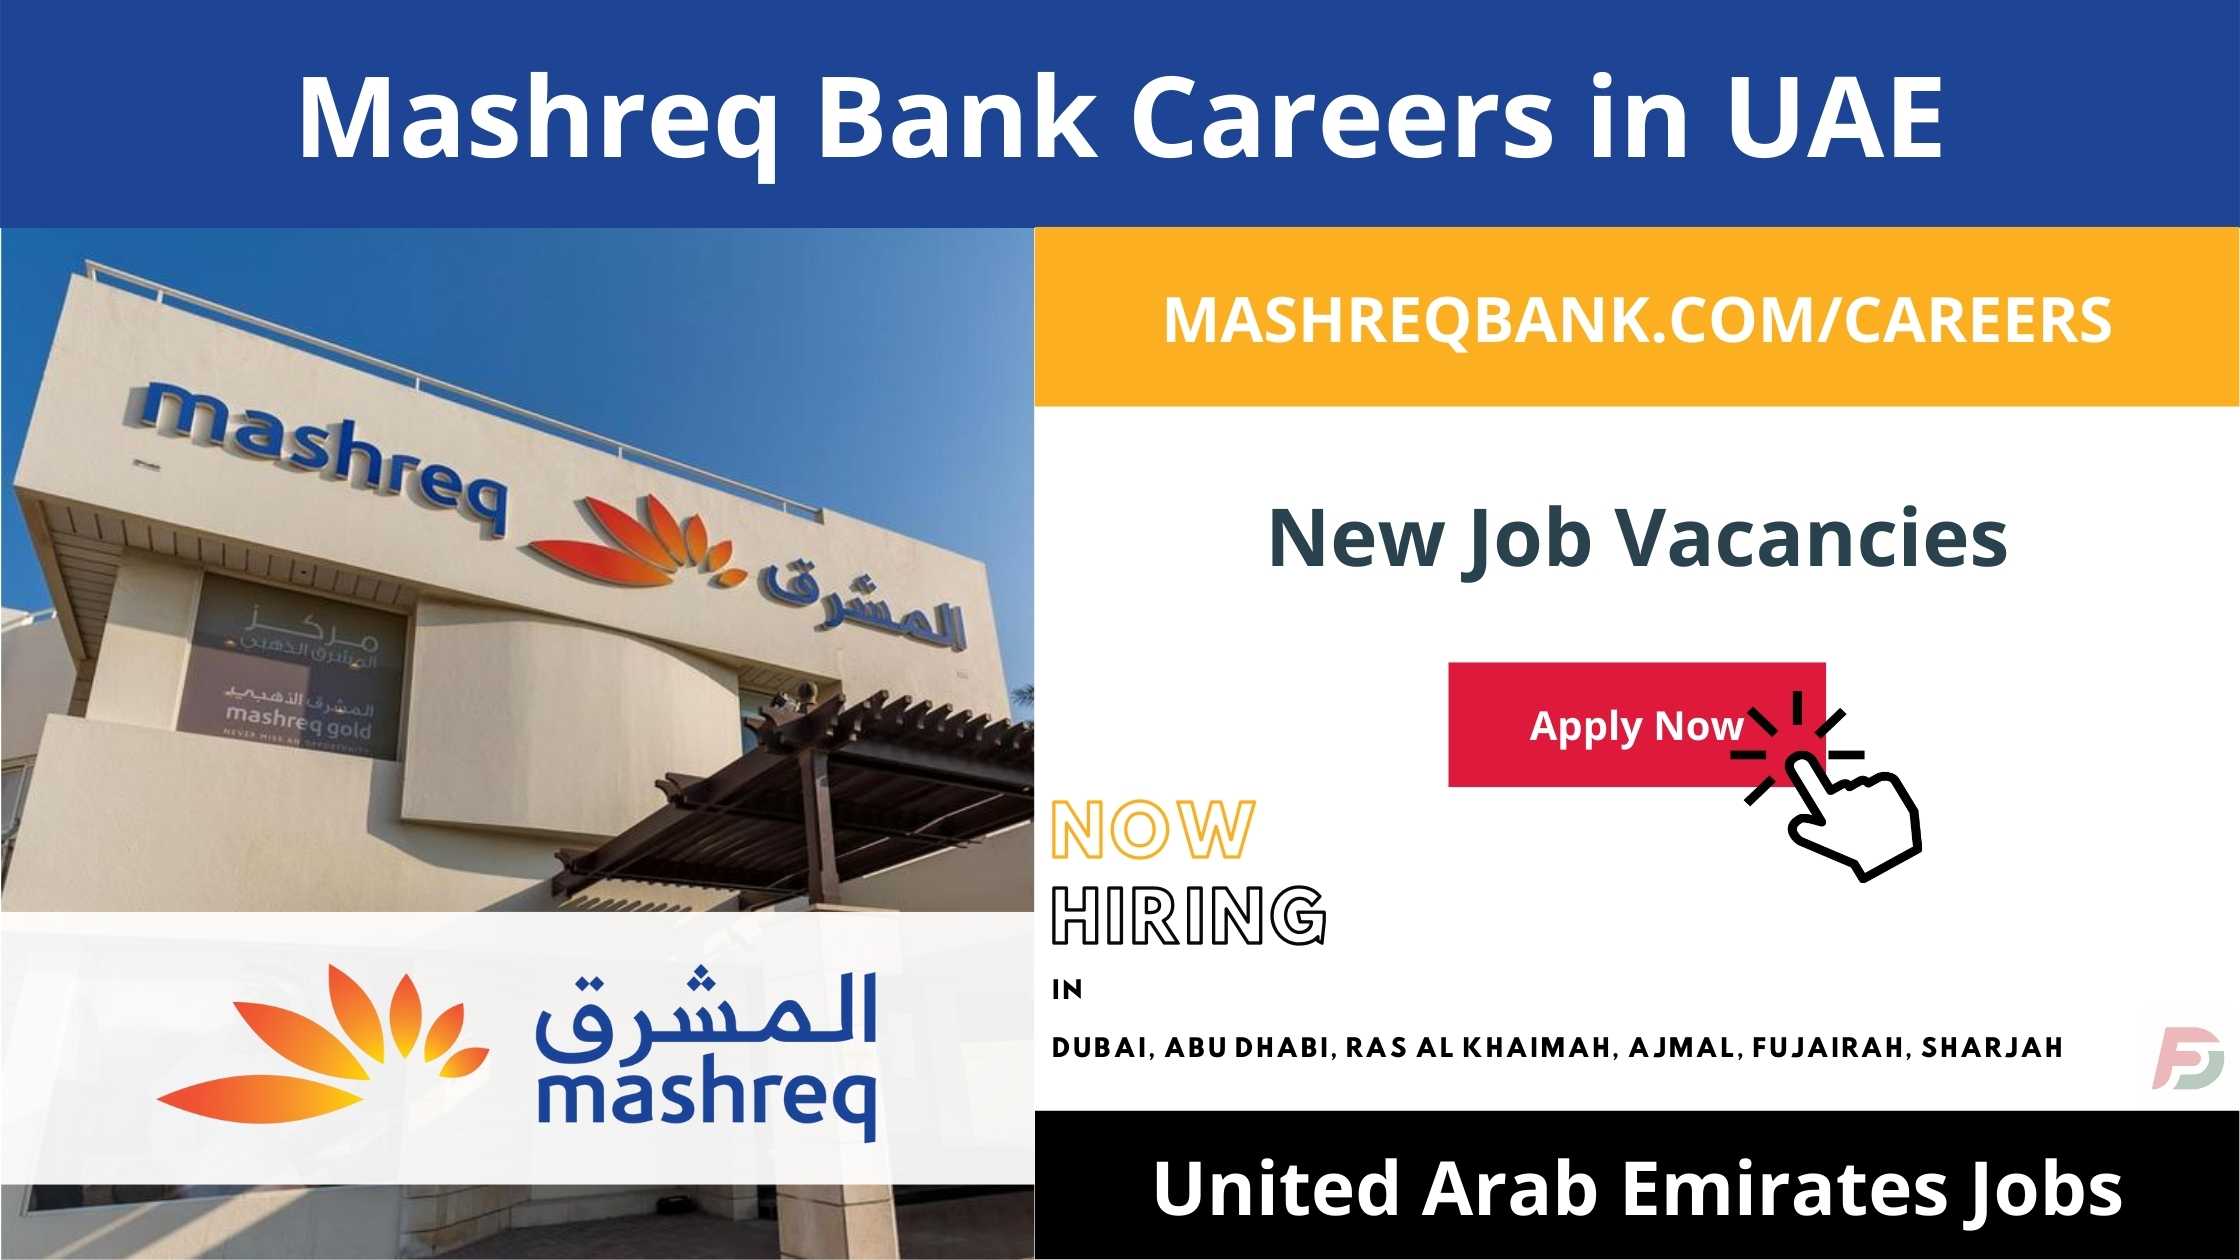 Mashreq Bank Careers in UAE